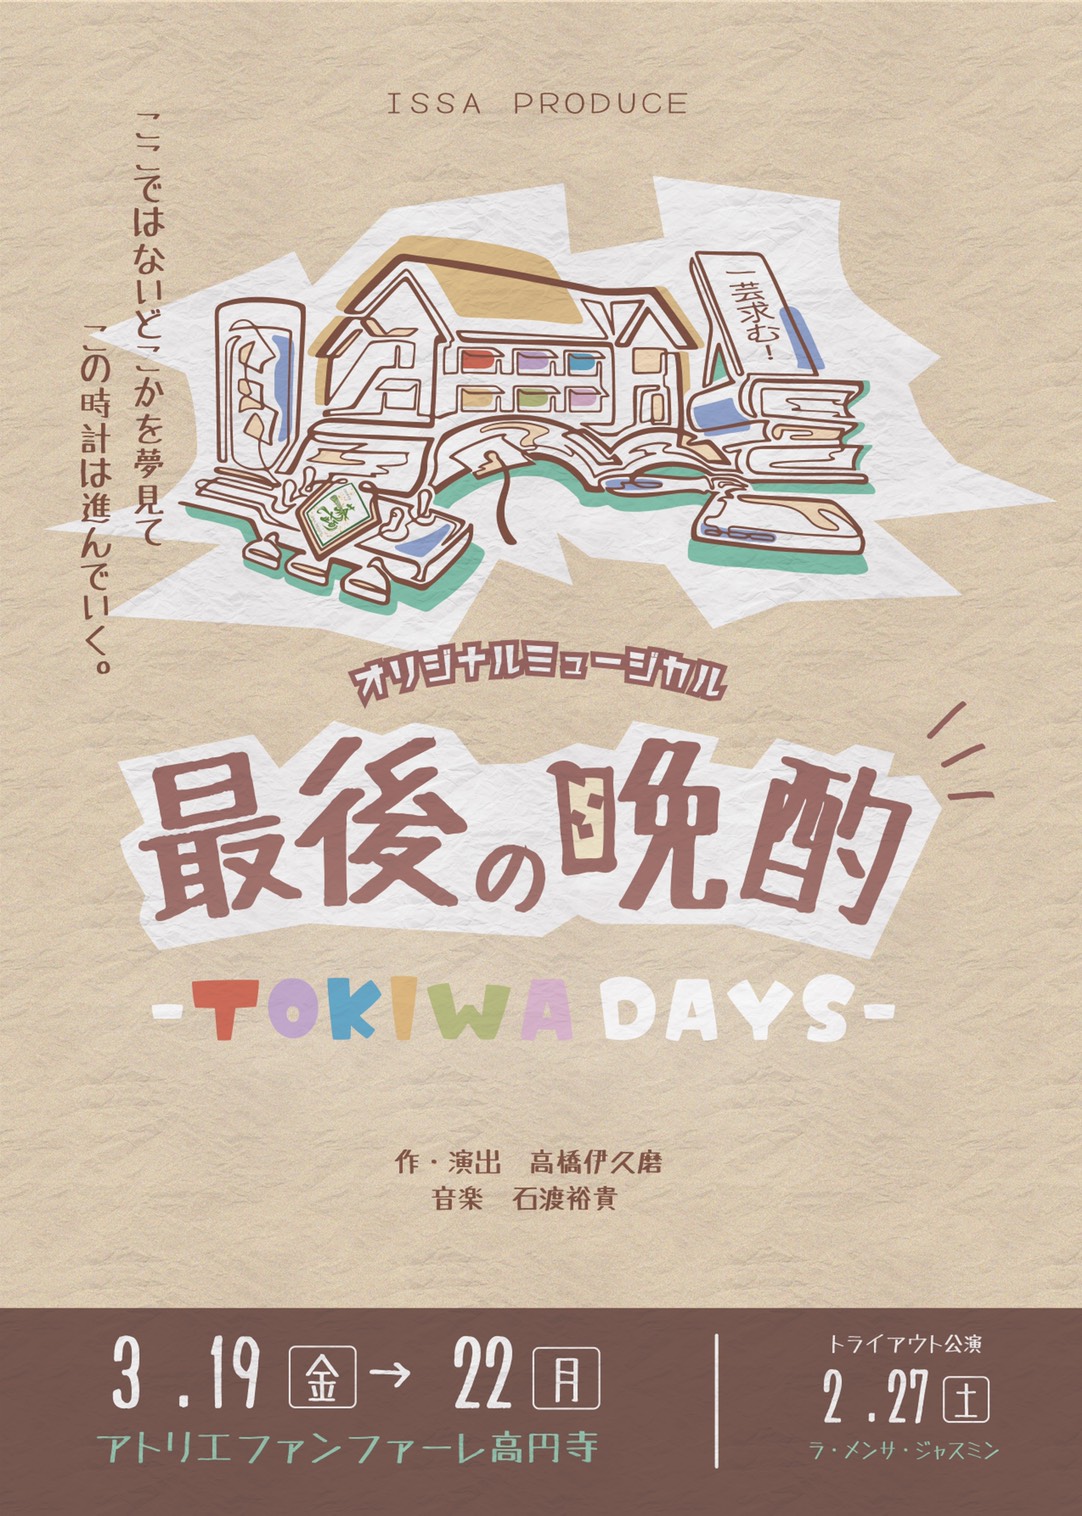 【配信 3/20 白】『最後の晩酌-TOKIWA DAYS-』配信チケット